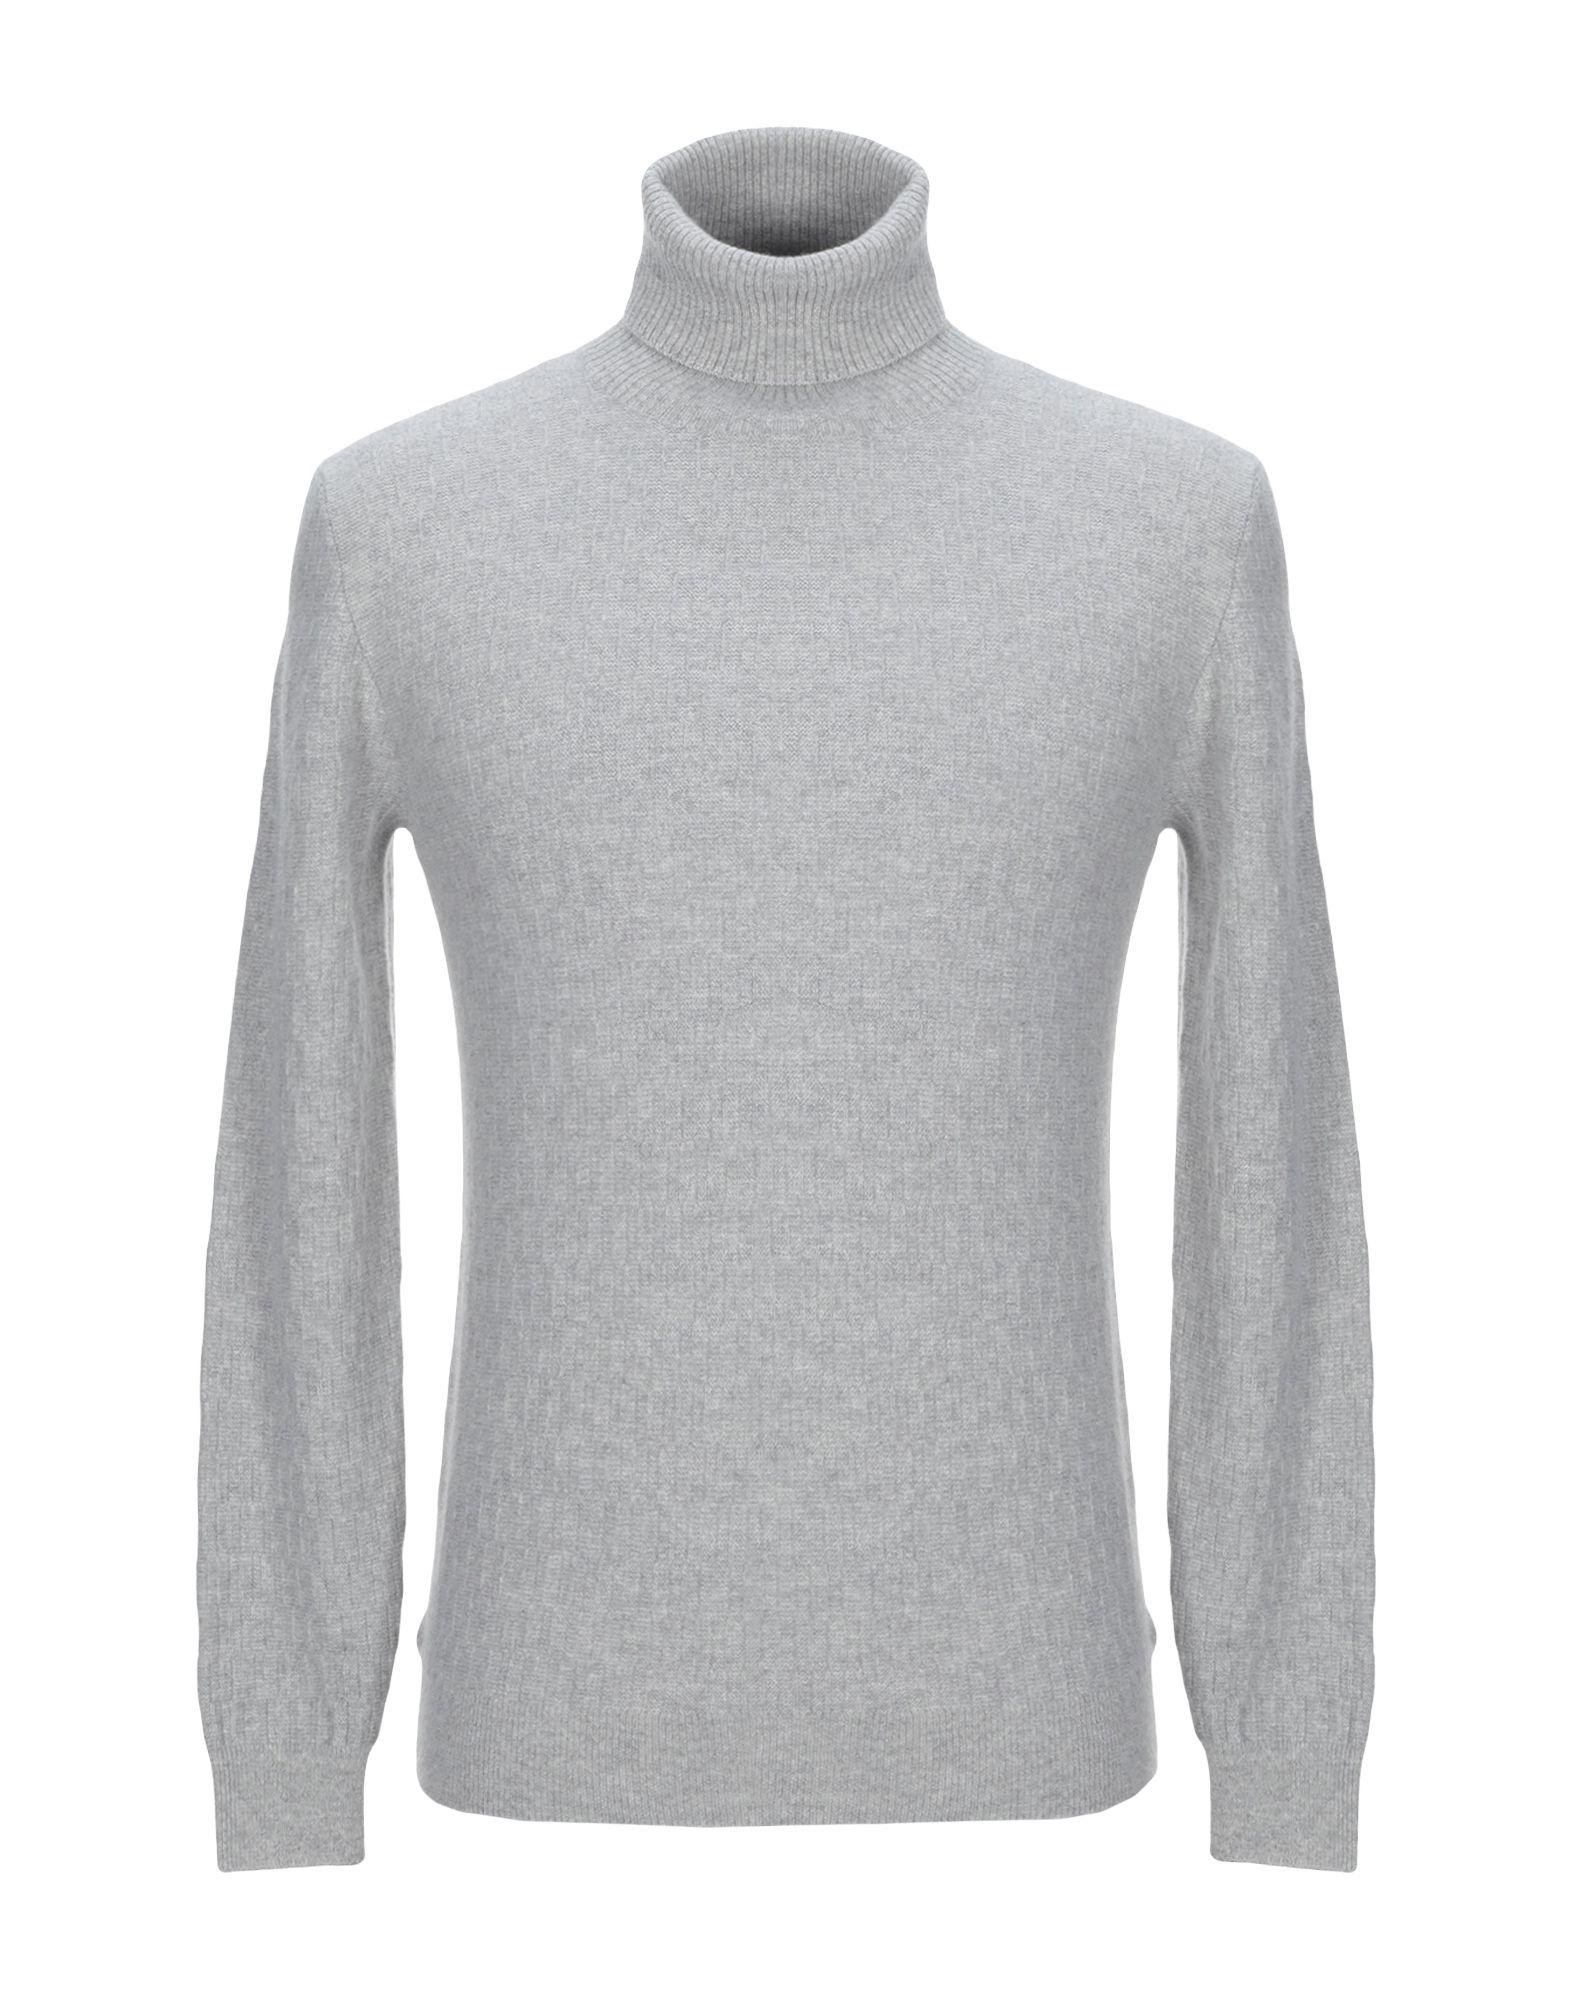 Zanone Wool Turtleneck in Light Grey (Gray) for Men - Lyst